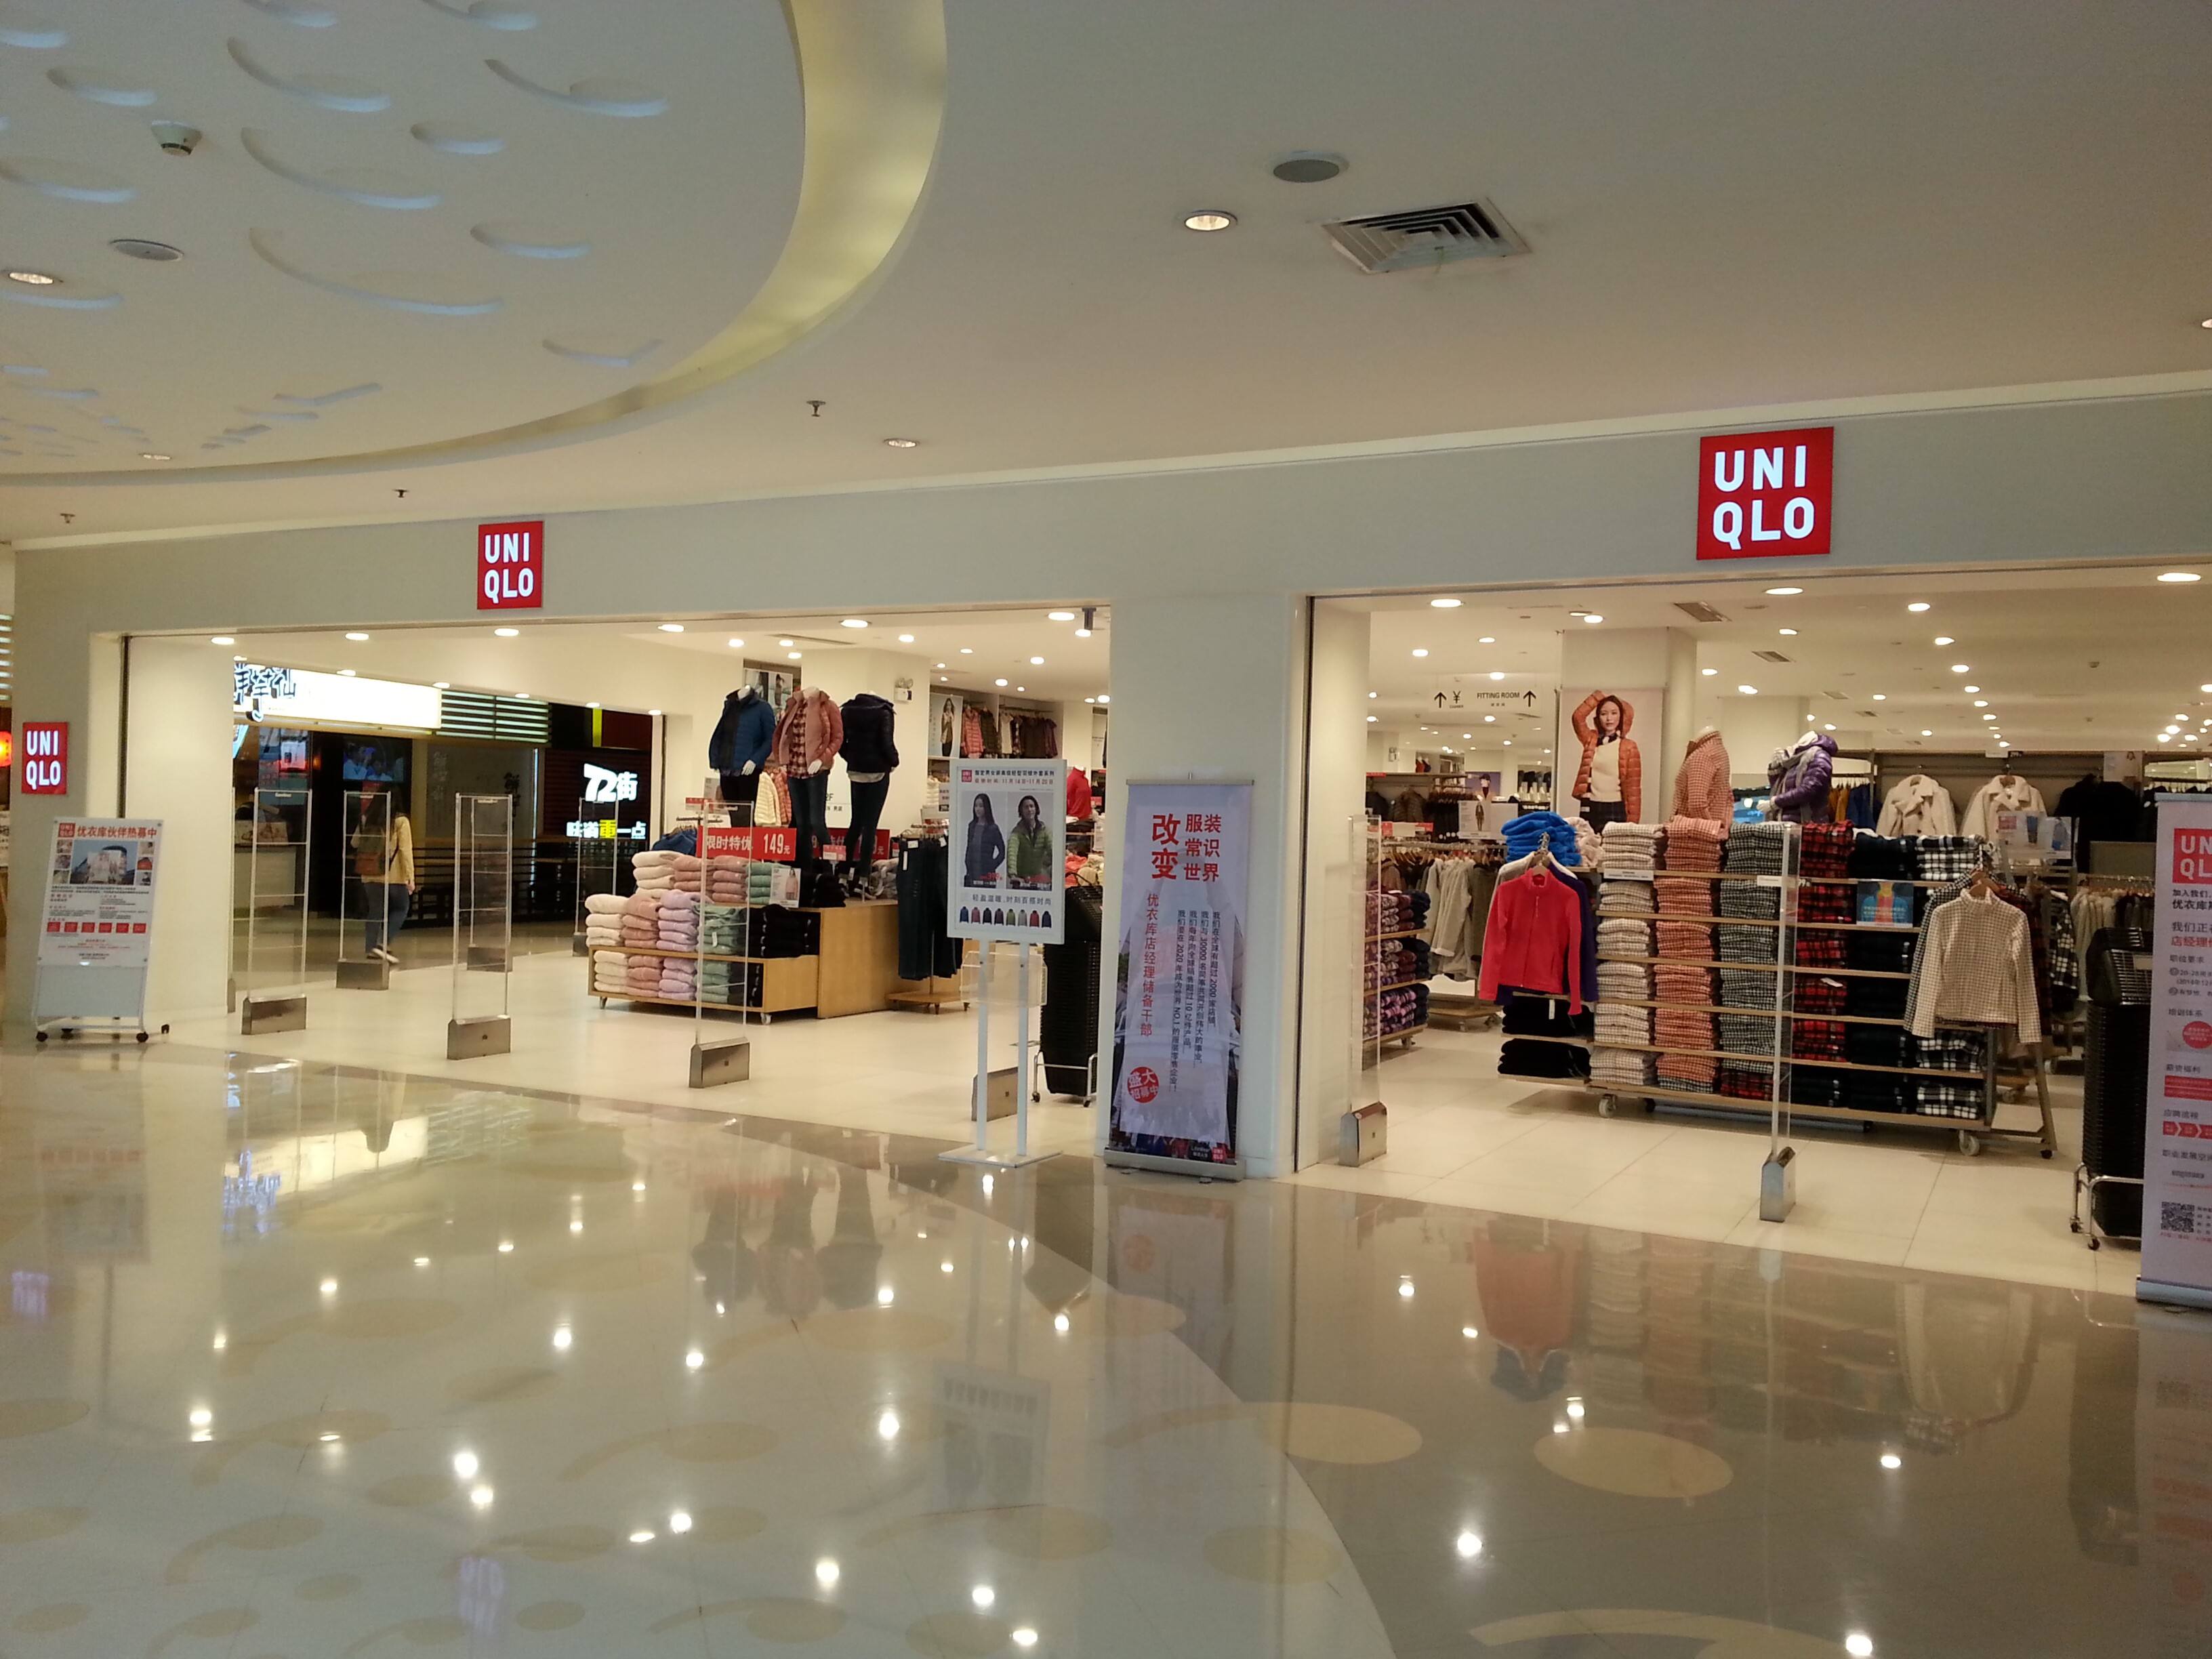 优衣库在中国的商店数量不断增加,为什么中国人喜欢优衣库?